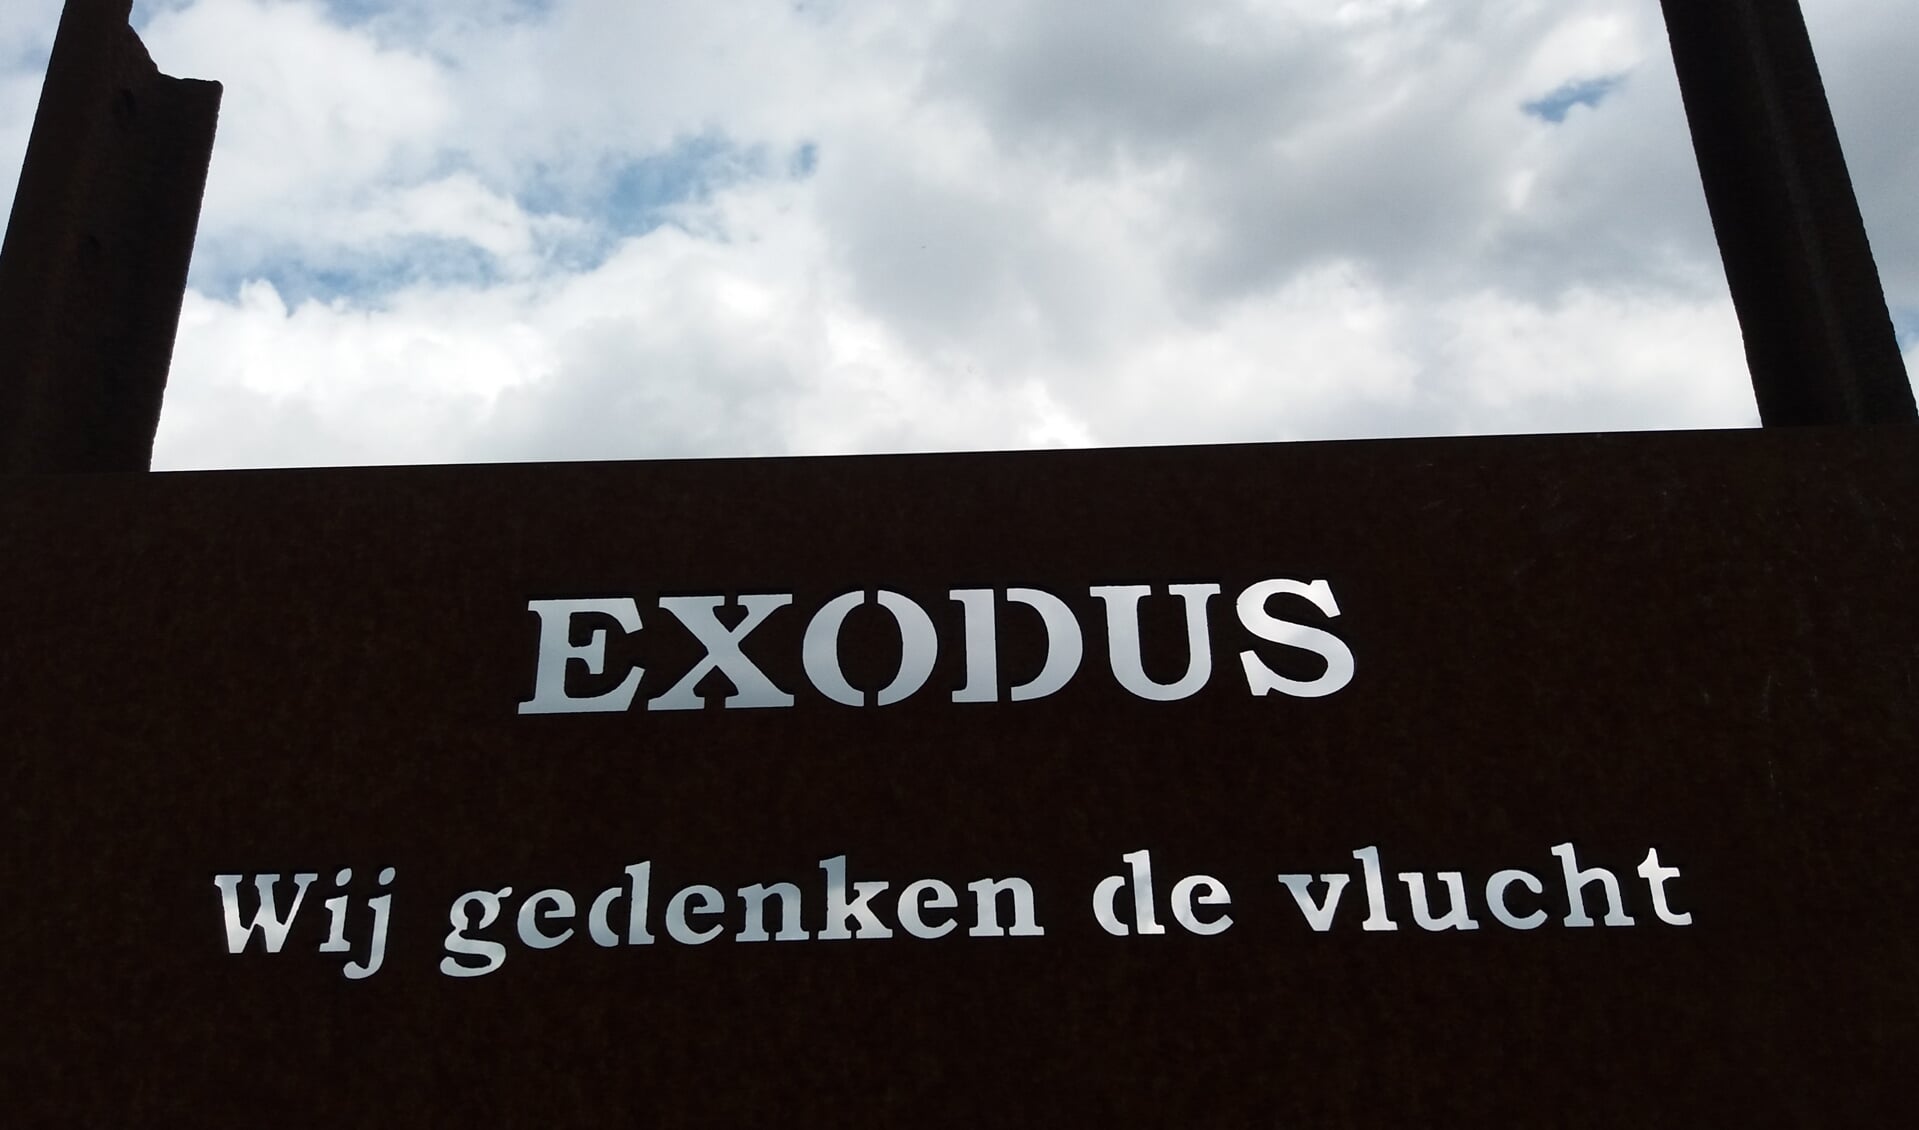 De Exodus als blijvende herinnering op De Praets. (foto: Jan Castelein)